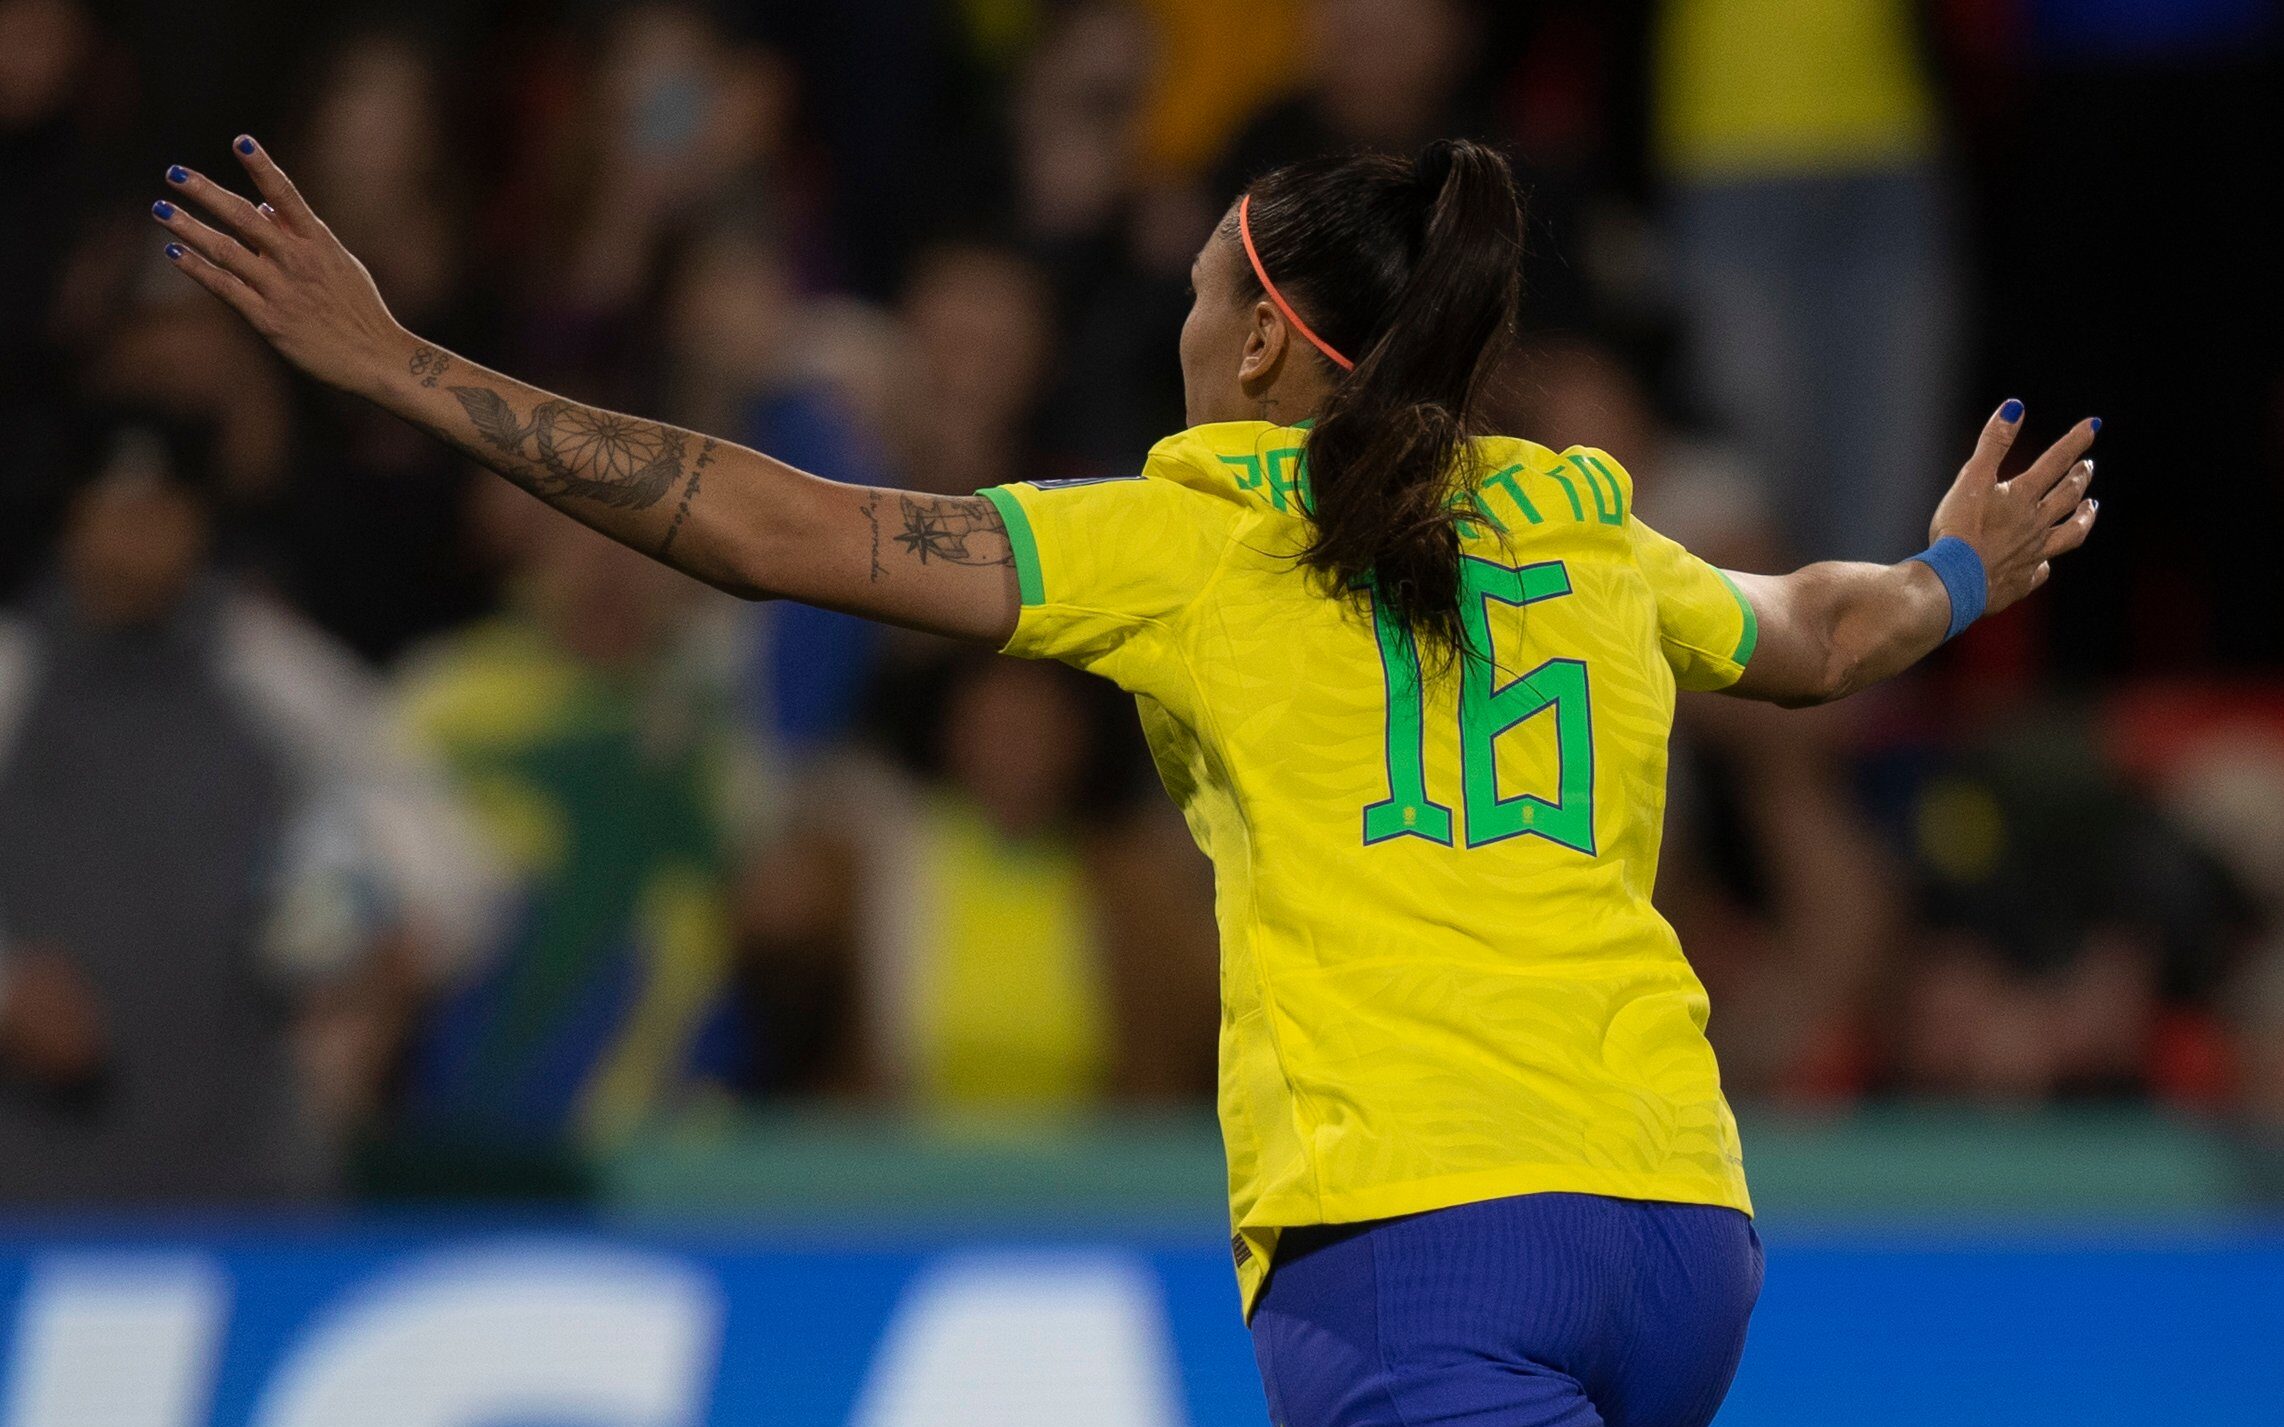 Placar elege Seleção Brasileira de todos os tempos; veja 'mineiros